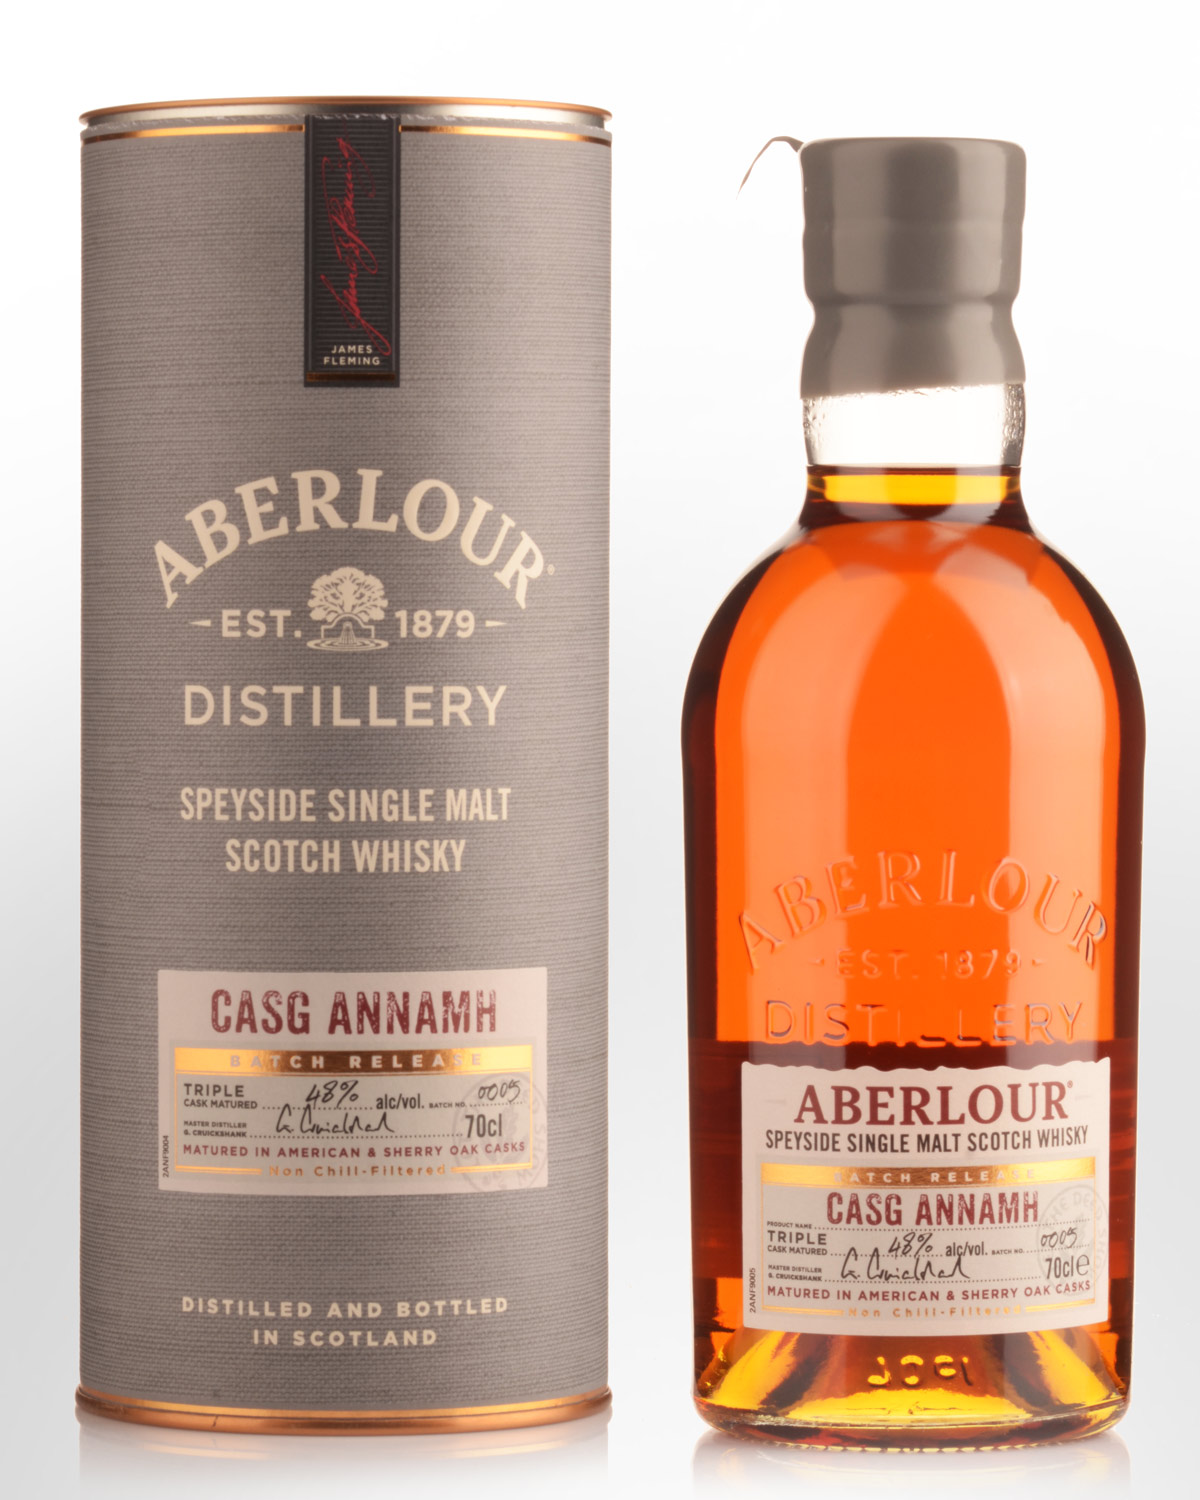 Aberlour Casg Annamh Single Malt Scotch Whisky (700ml) - Batch 5